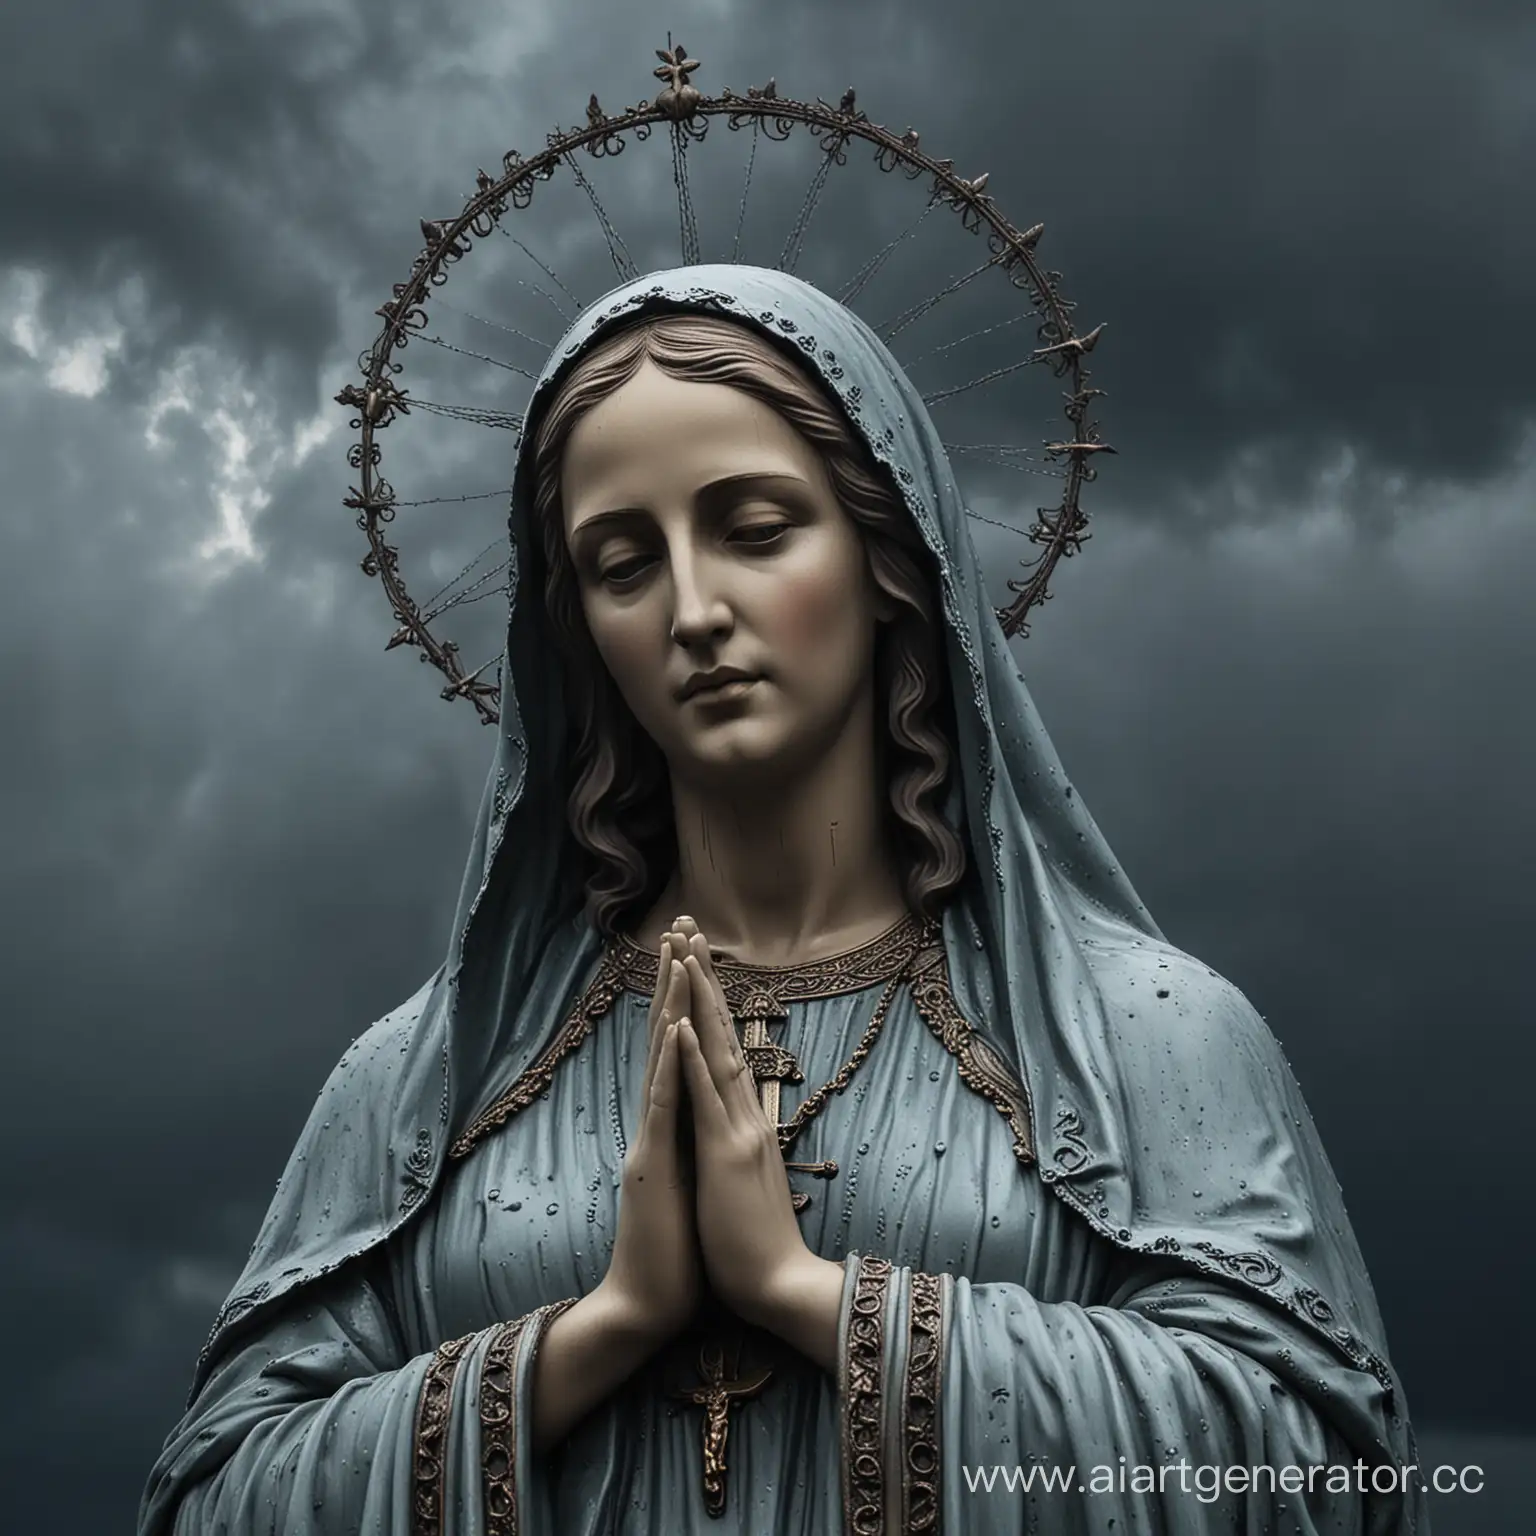 Портрет Статуи девы Марии на фоне мрачного неба в стиле готики в темных цветах